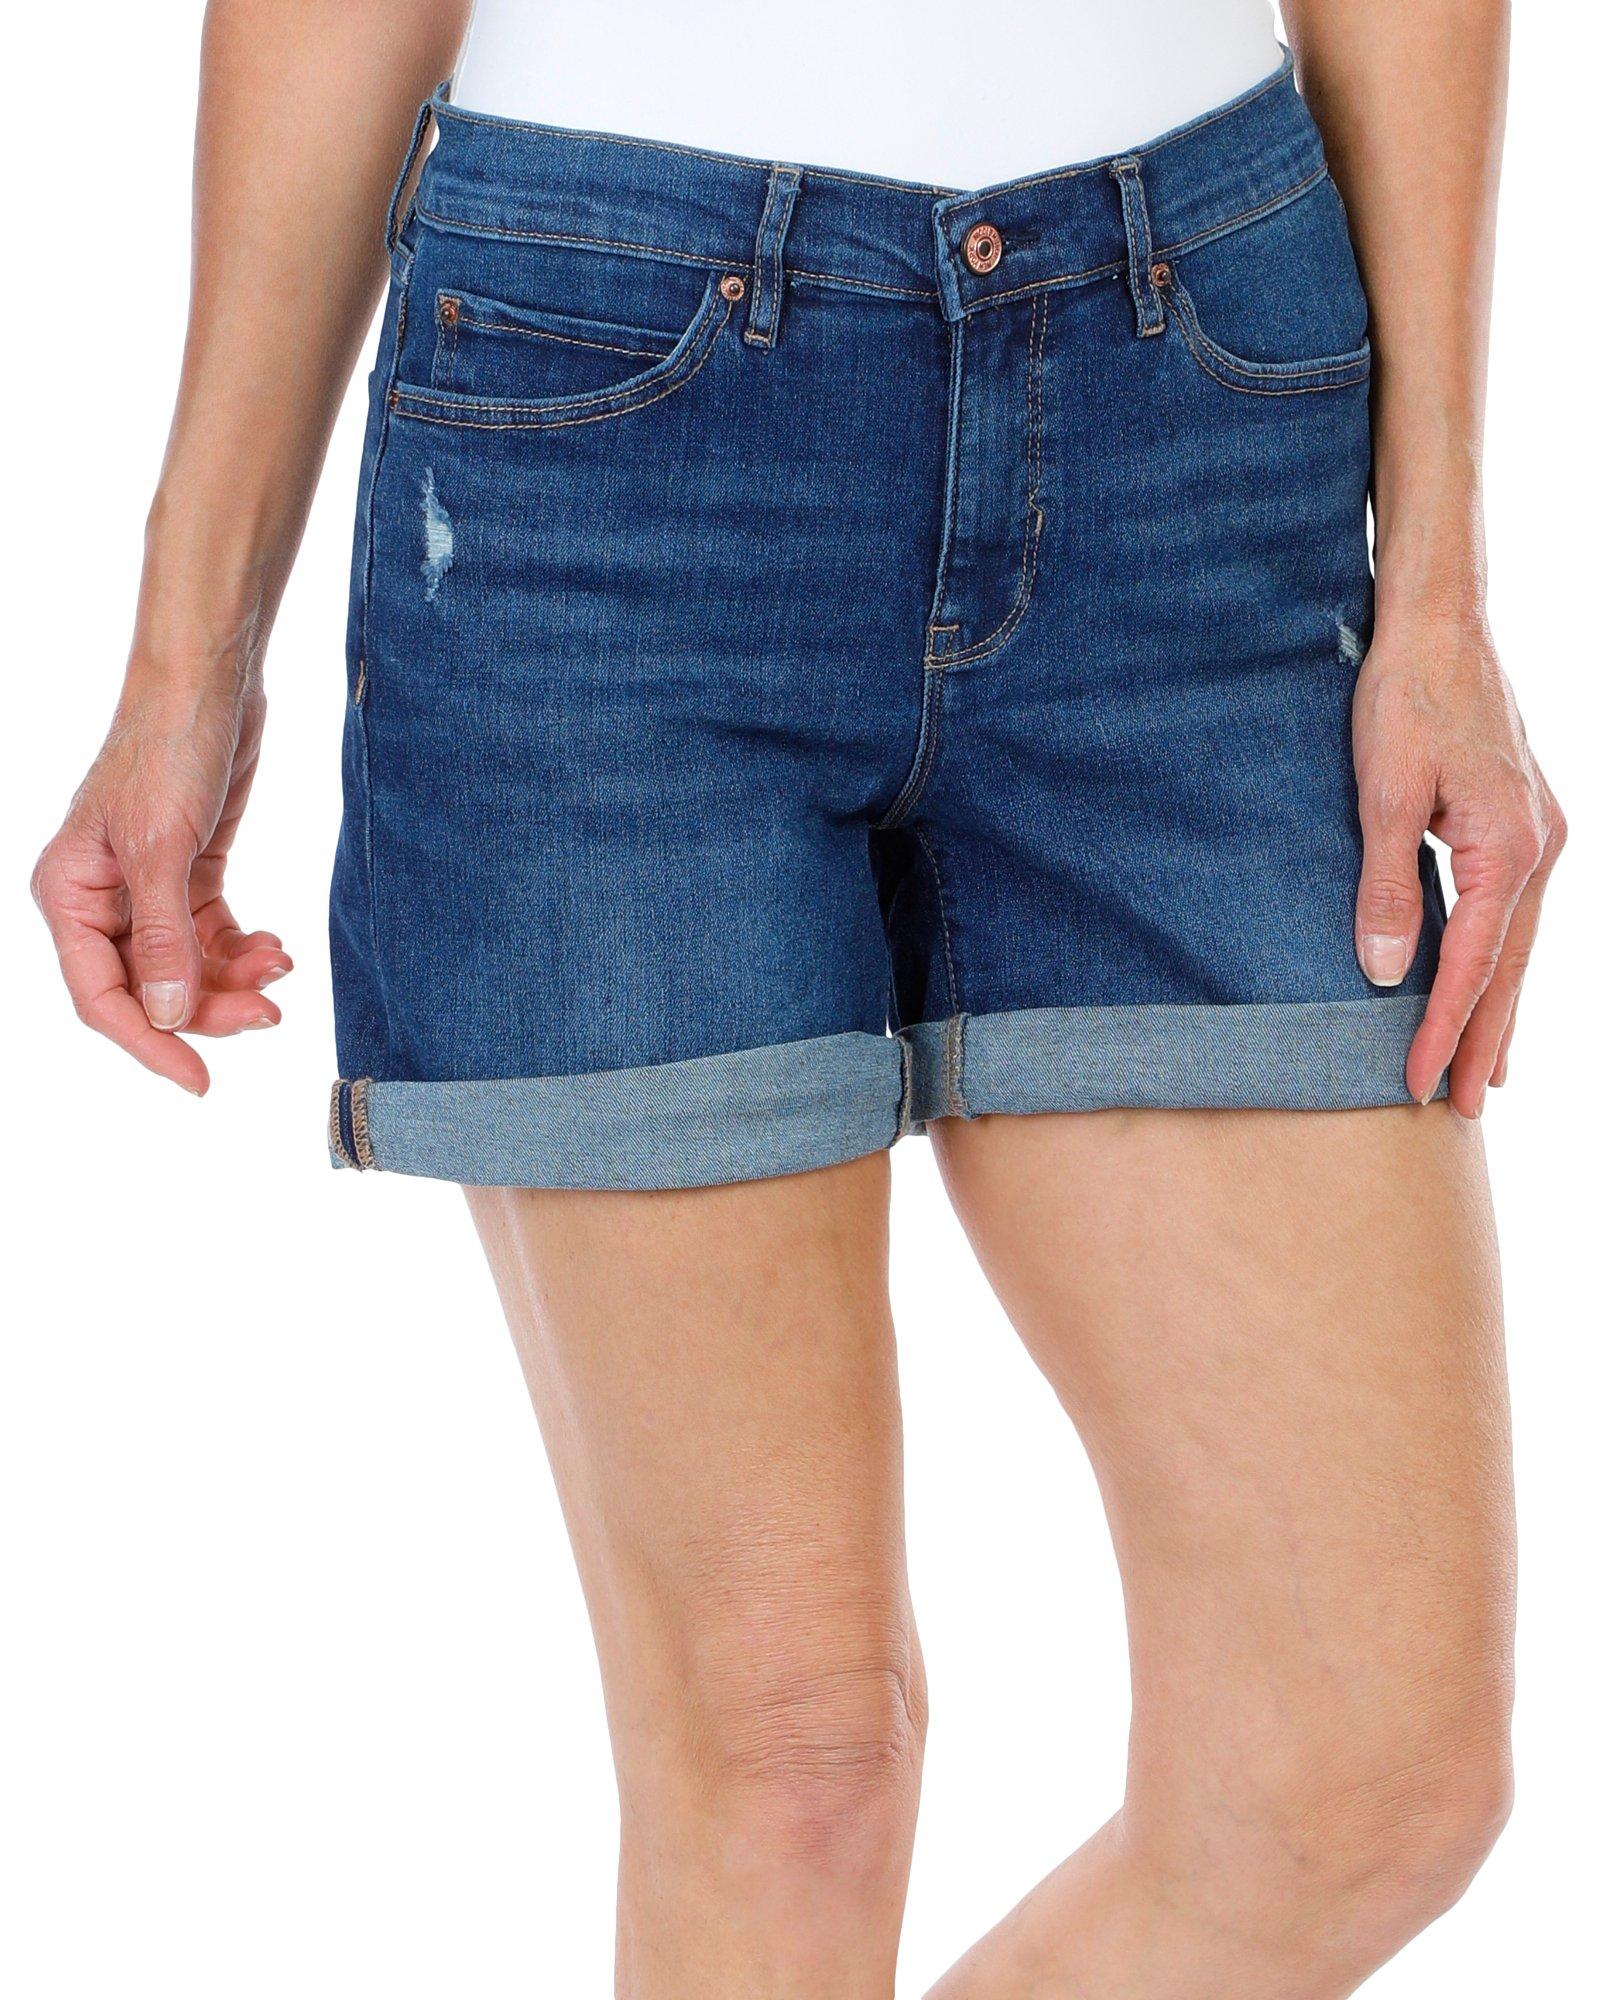 Women's Soho High Rise Denim Shorts